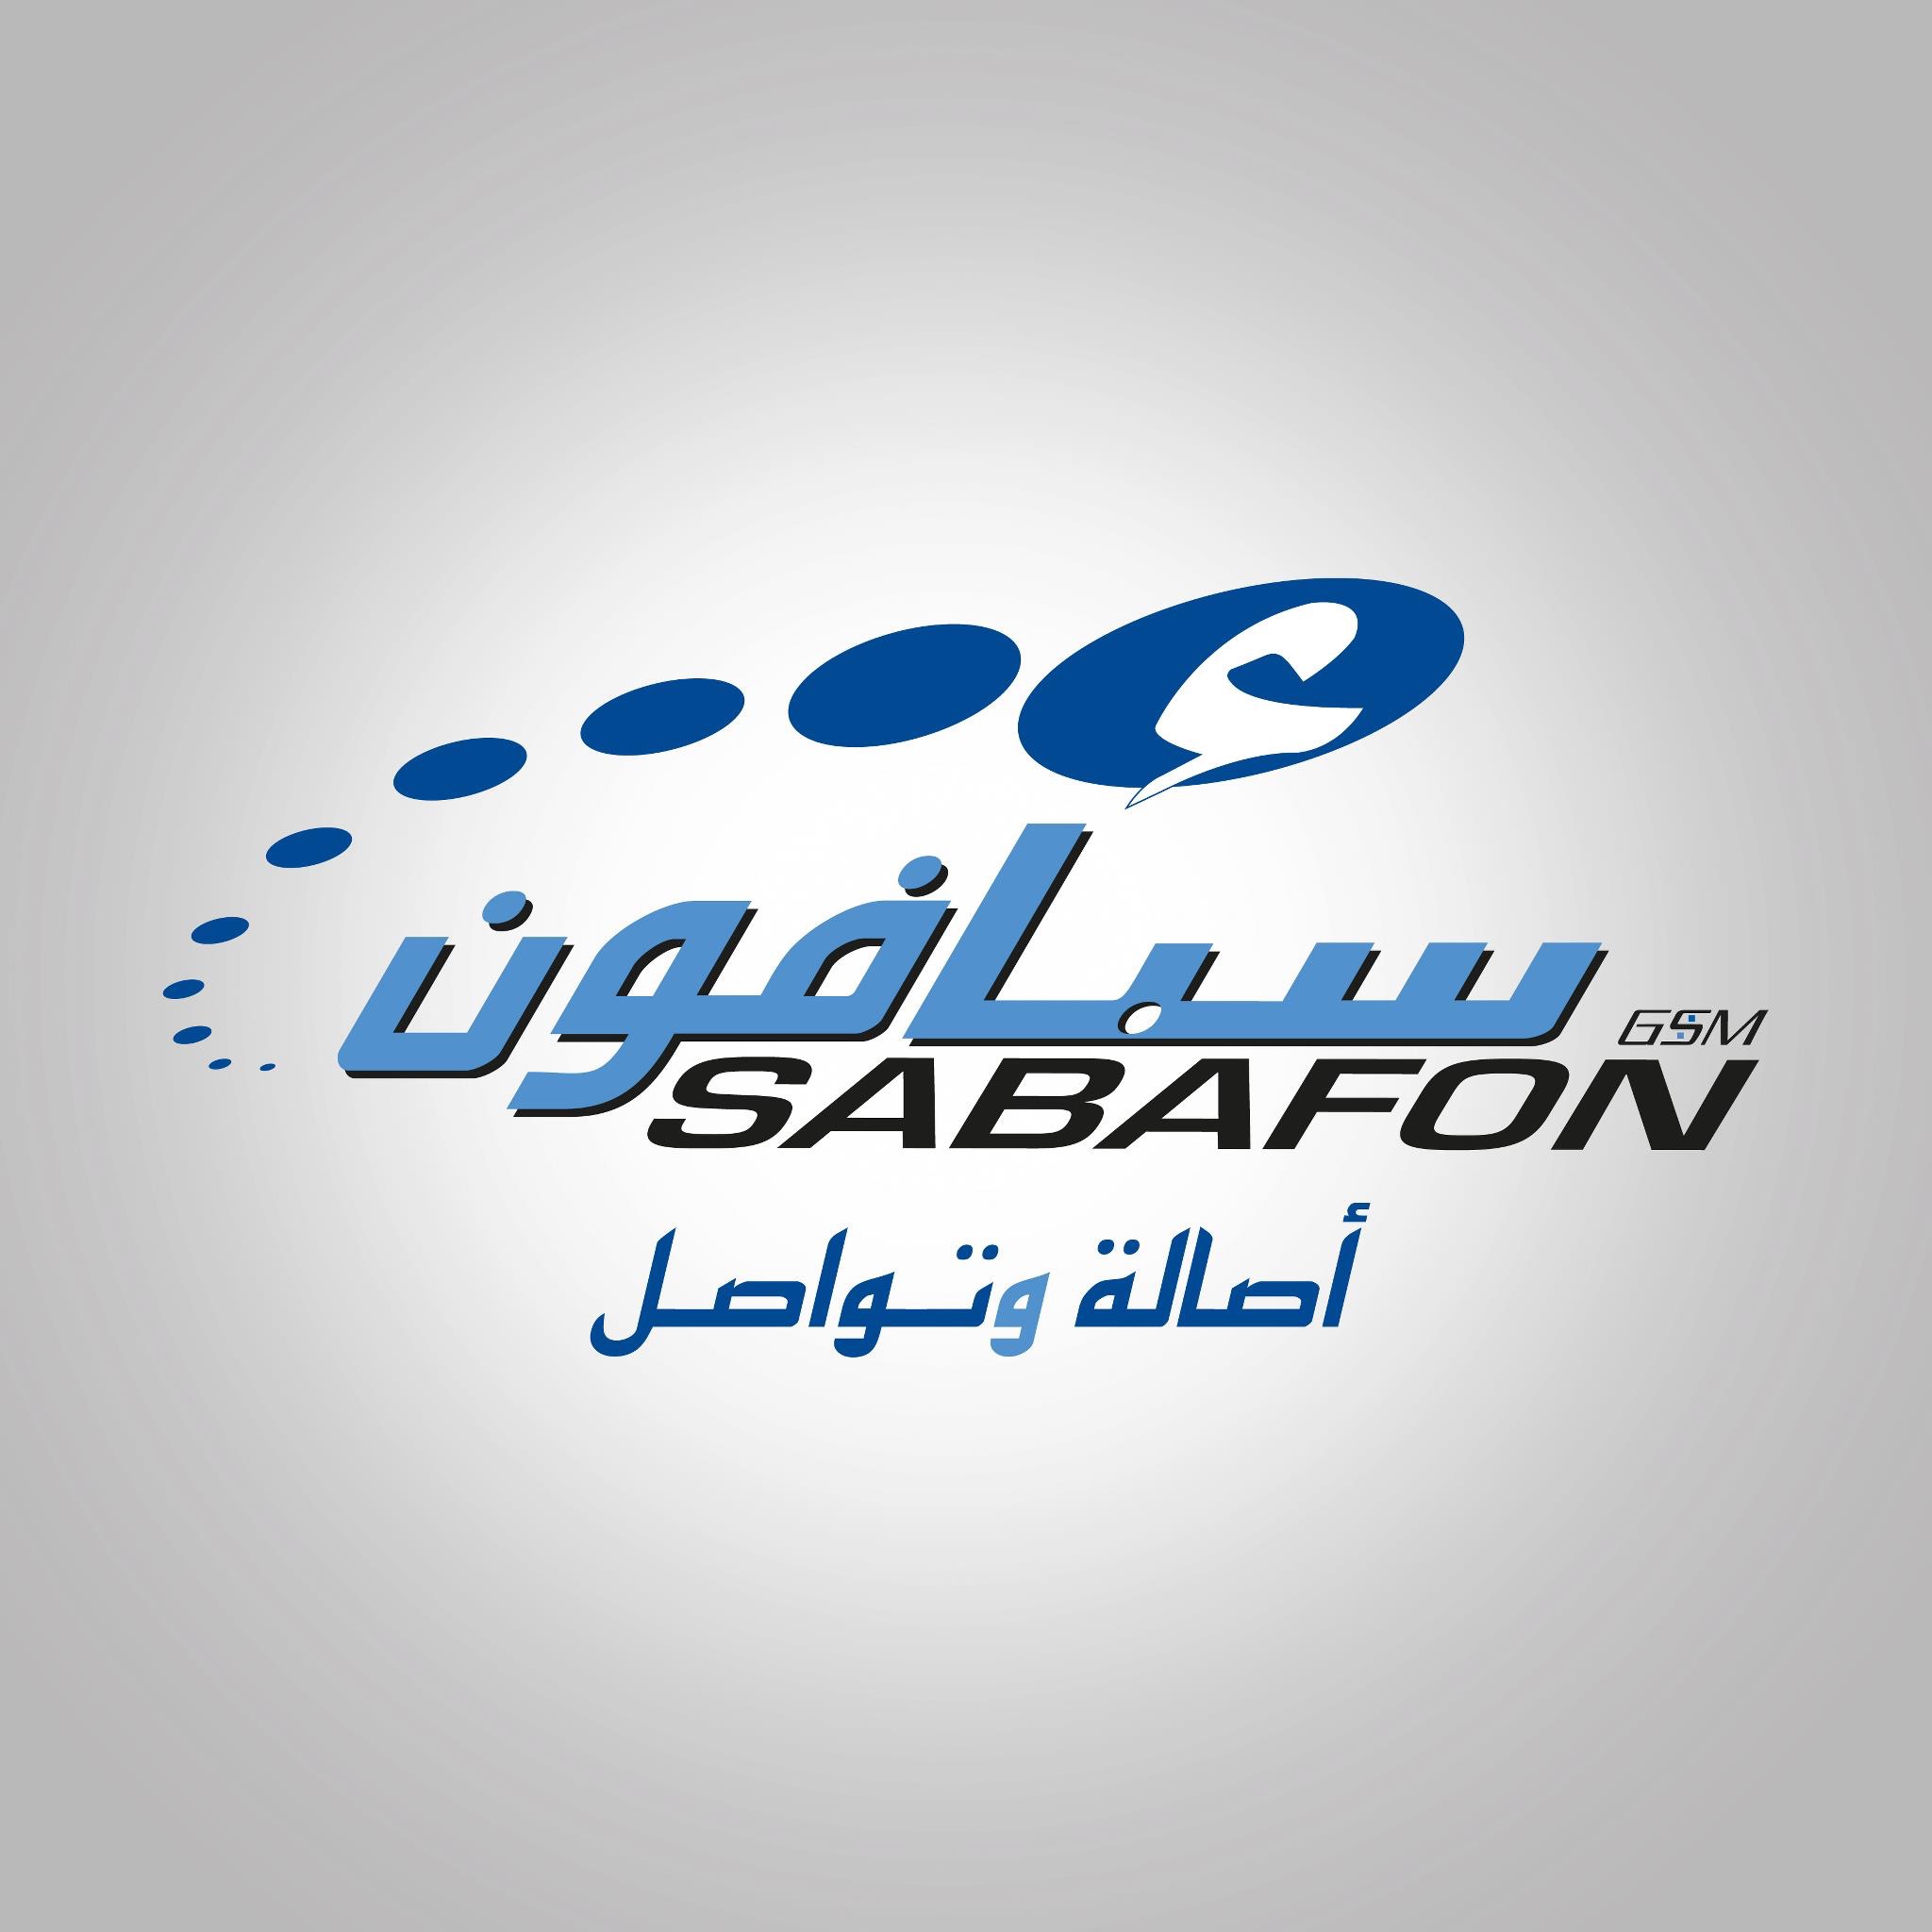 الحوثيون يستولون على شركة سبأفون رسميا .. (تفاصيل + أسماء)